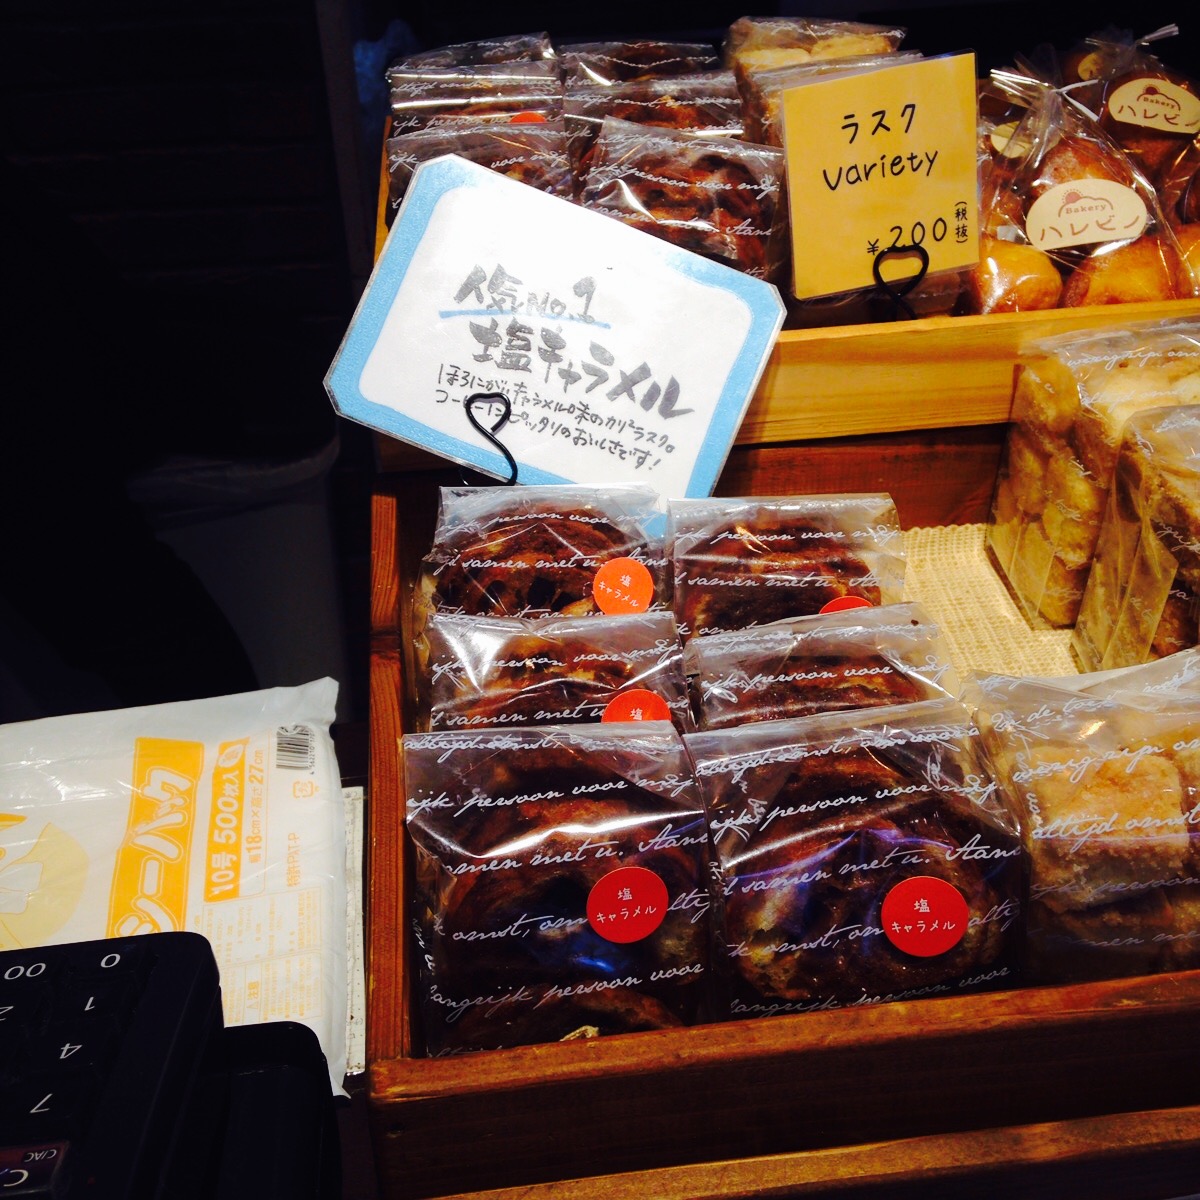 地場野菜を使った身体に優しいオーガニックパン＆カフェ『ハレビノ』(千葉県柏市)